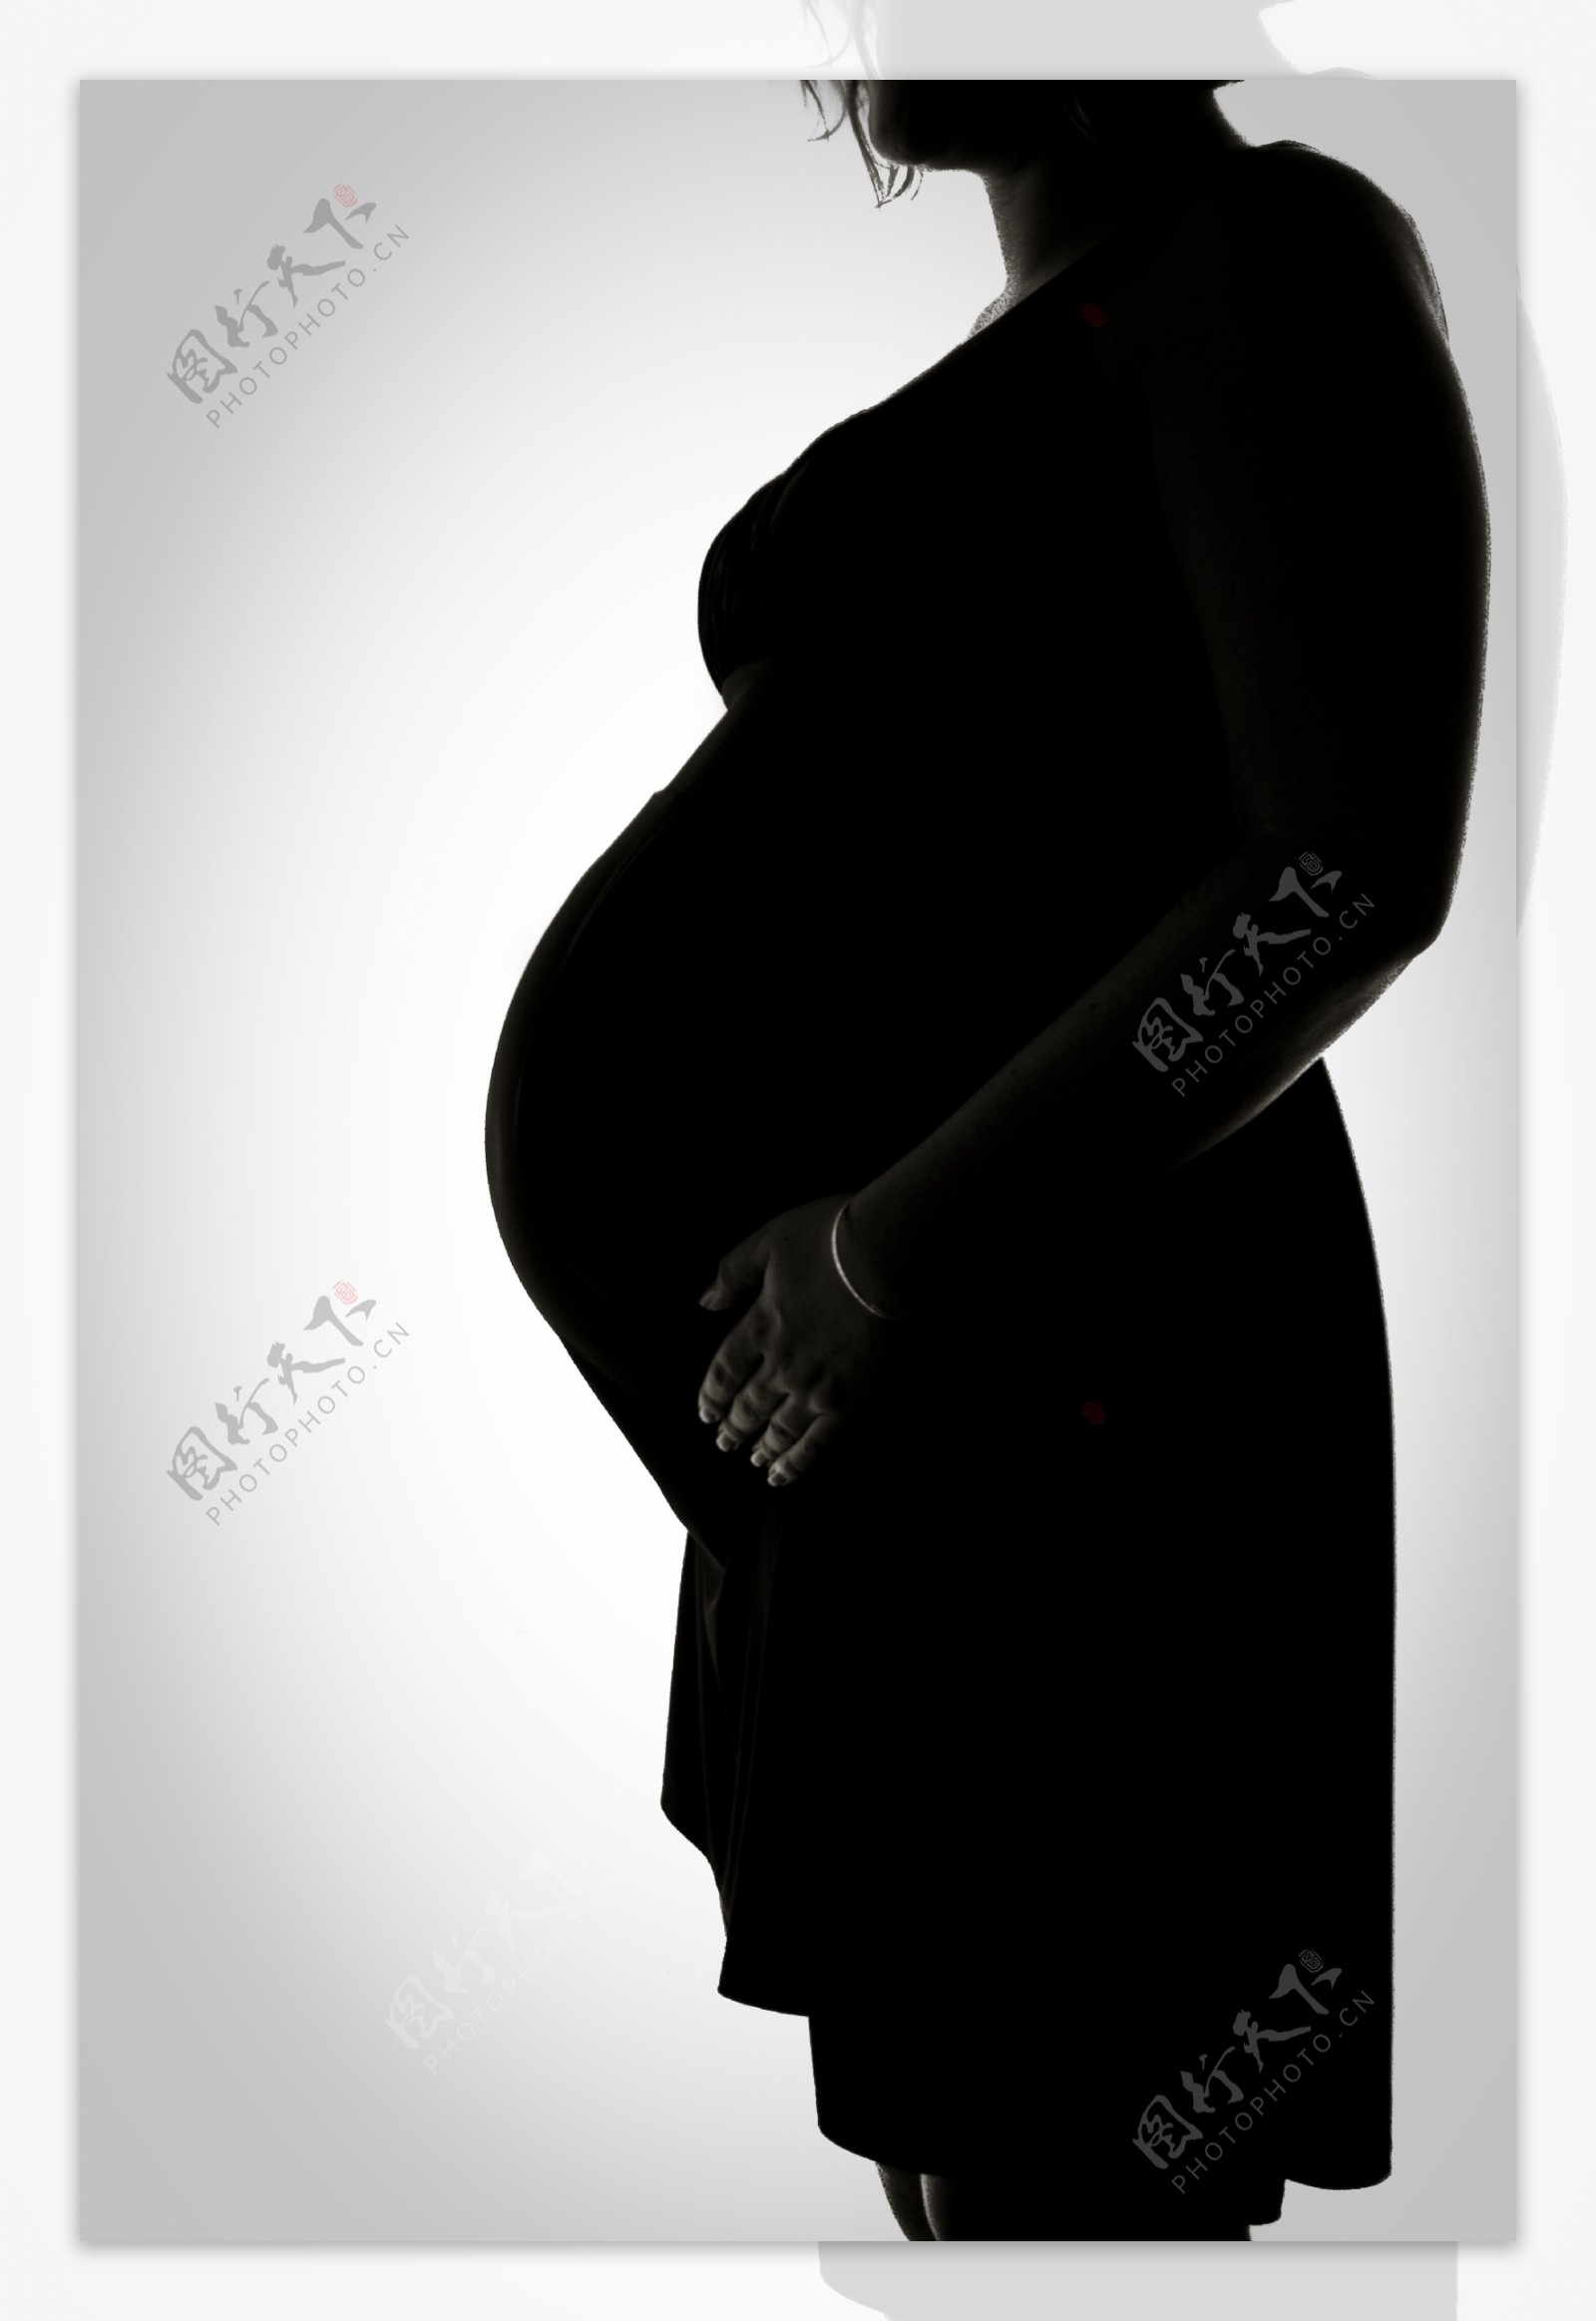 孕妇剪影图片